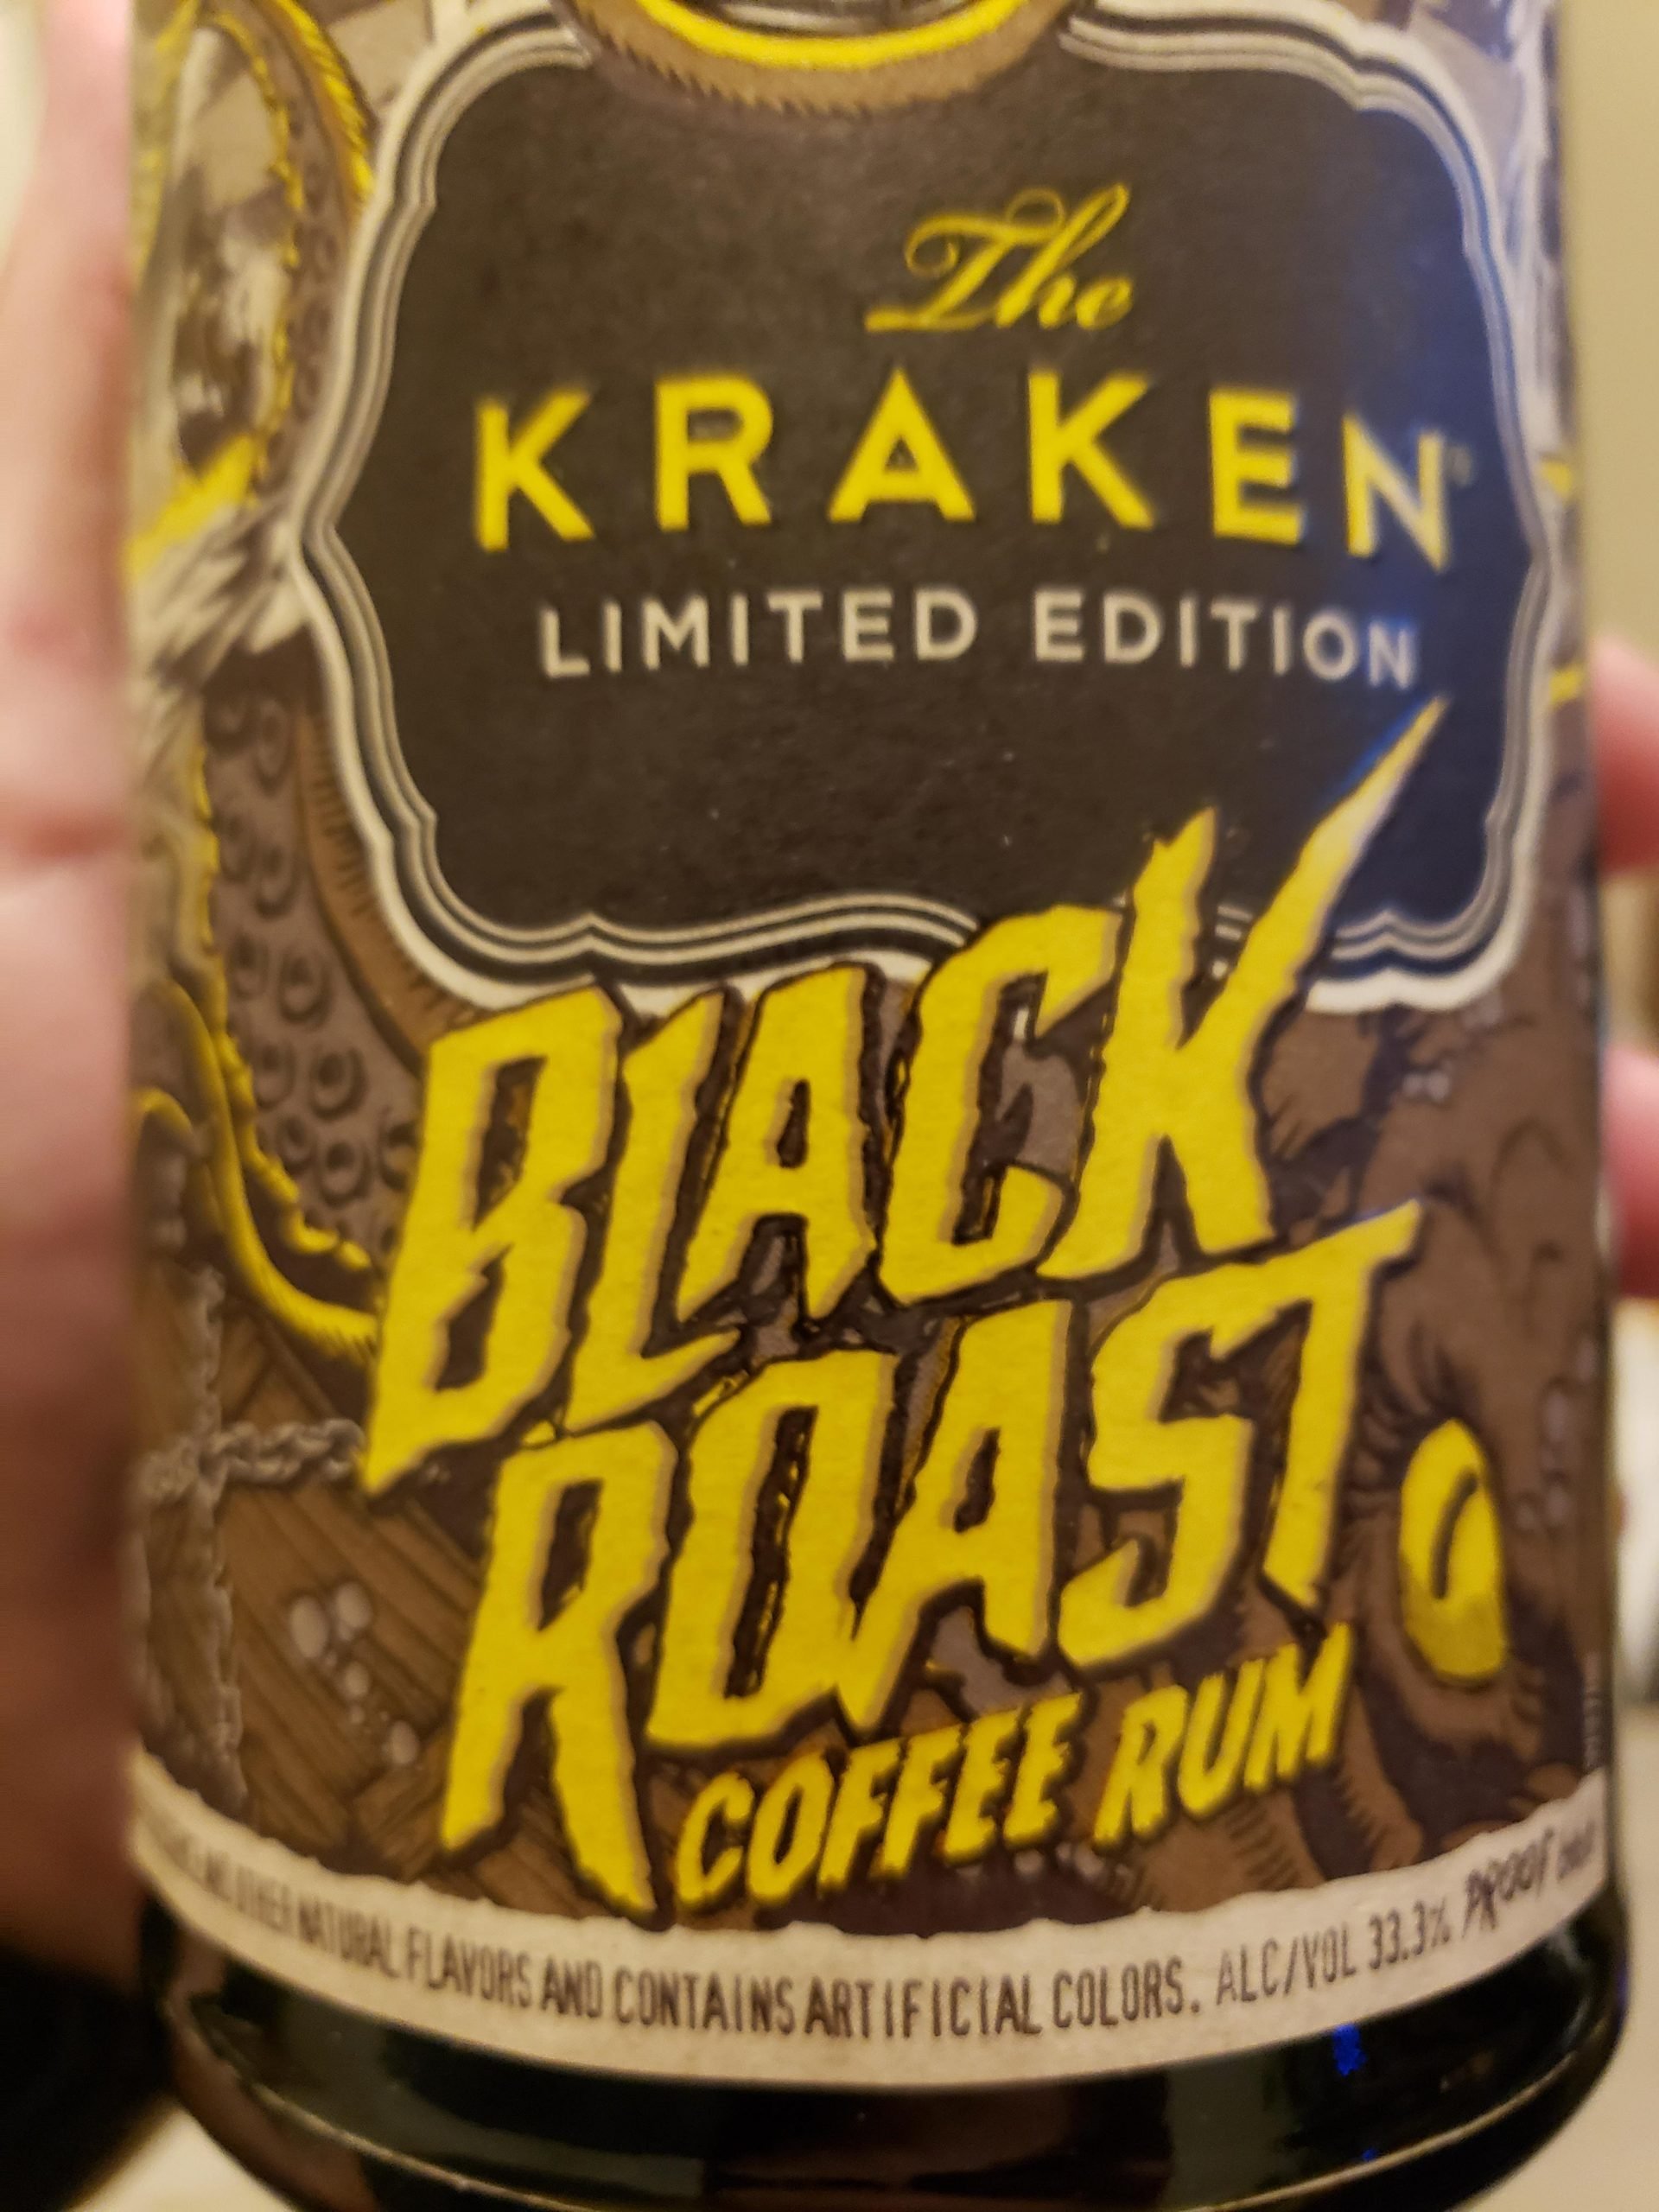 The Kraken Black Roast, any idea how many Carbs? : ketodrunk